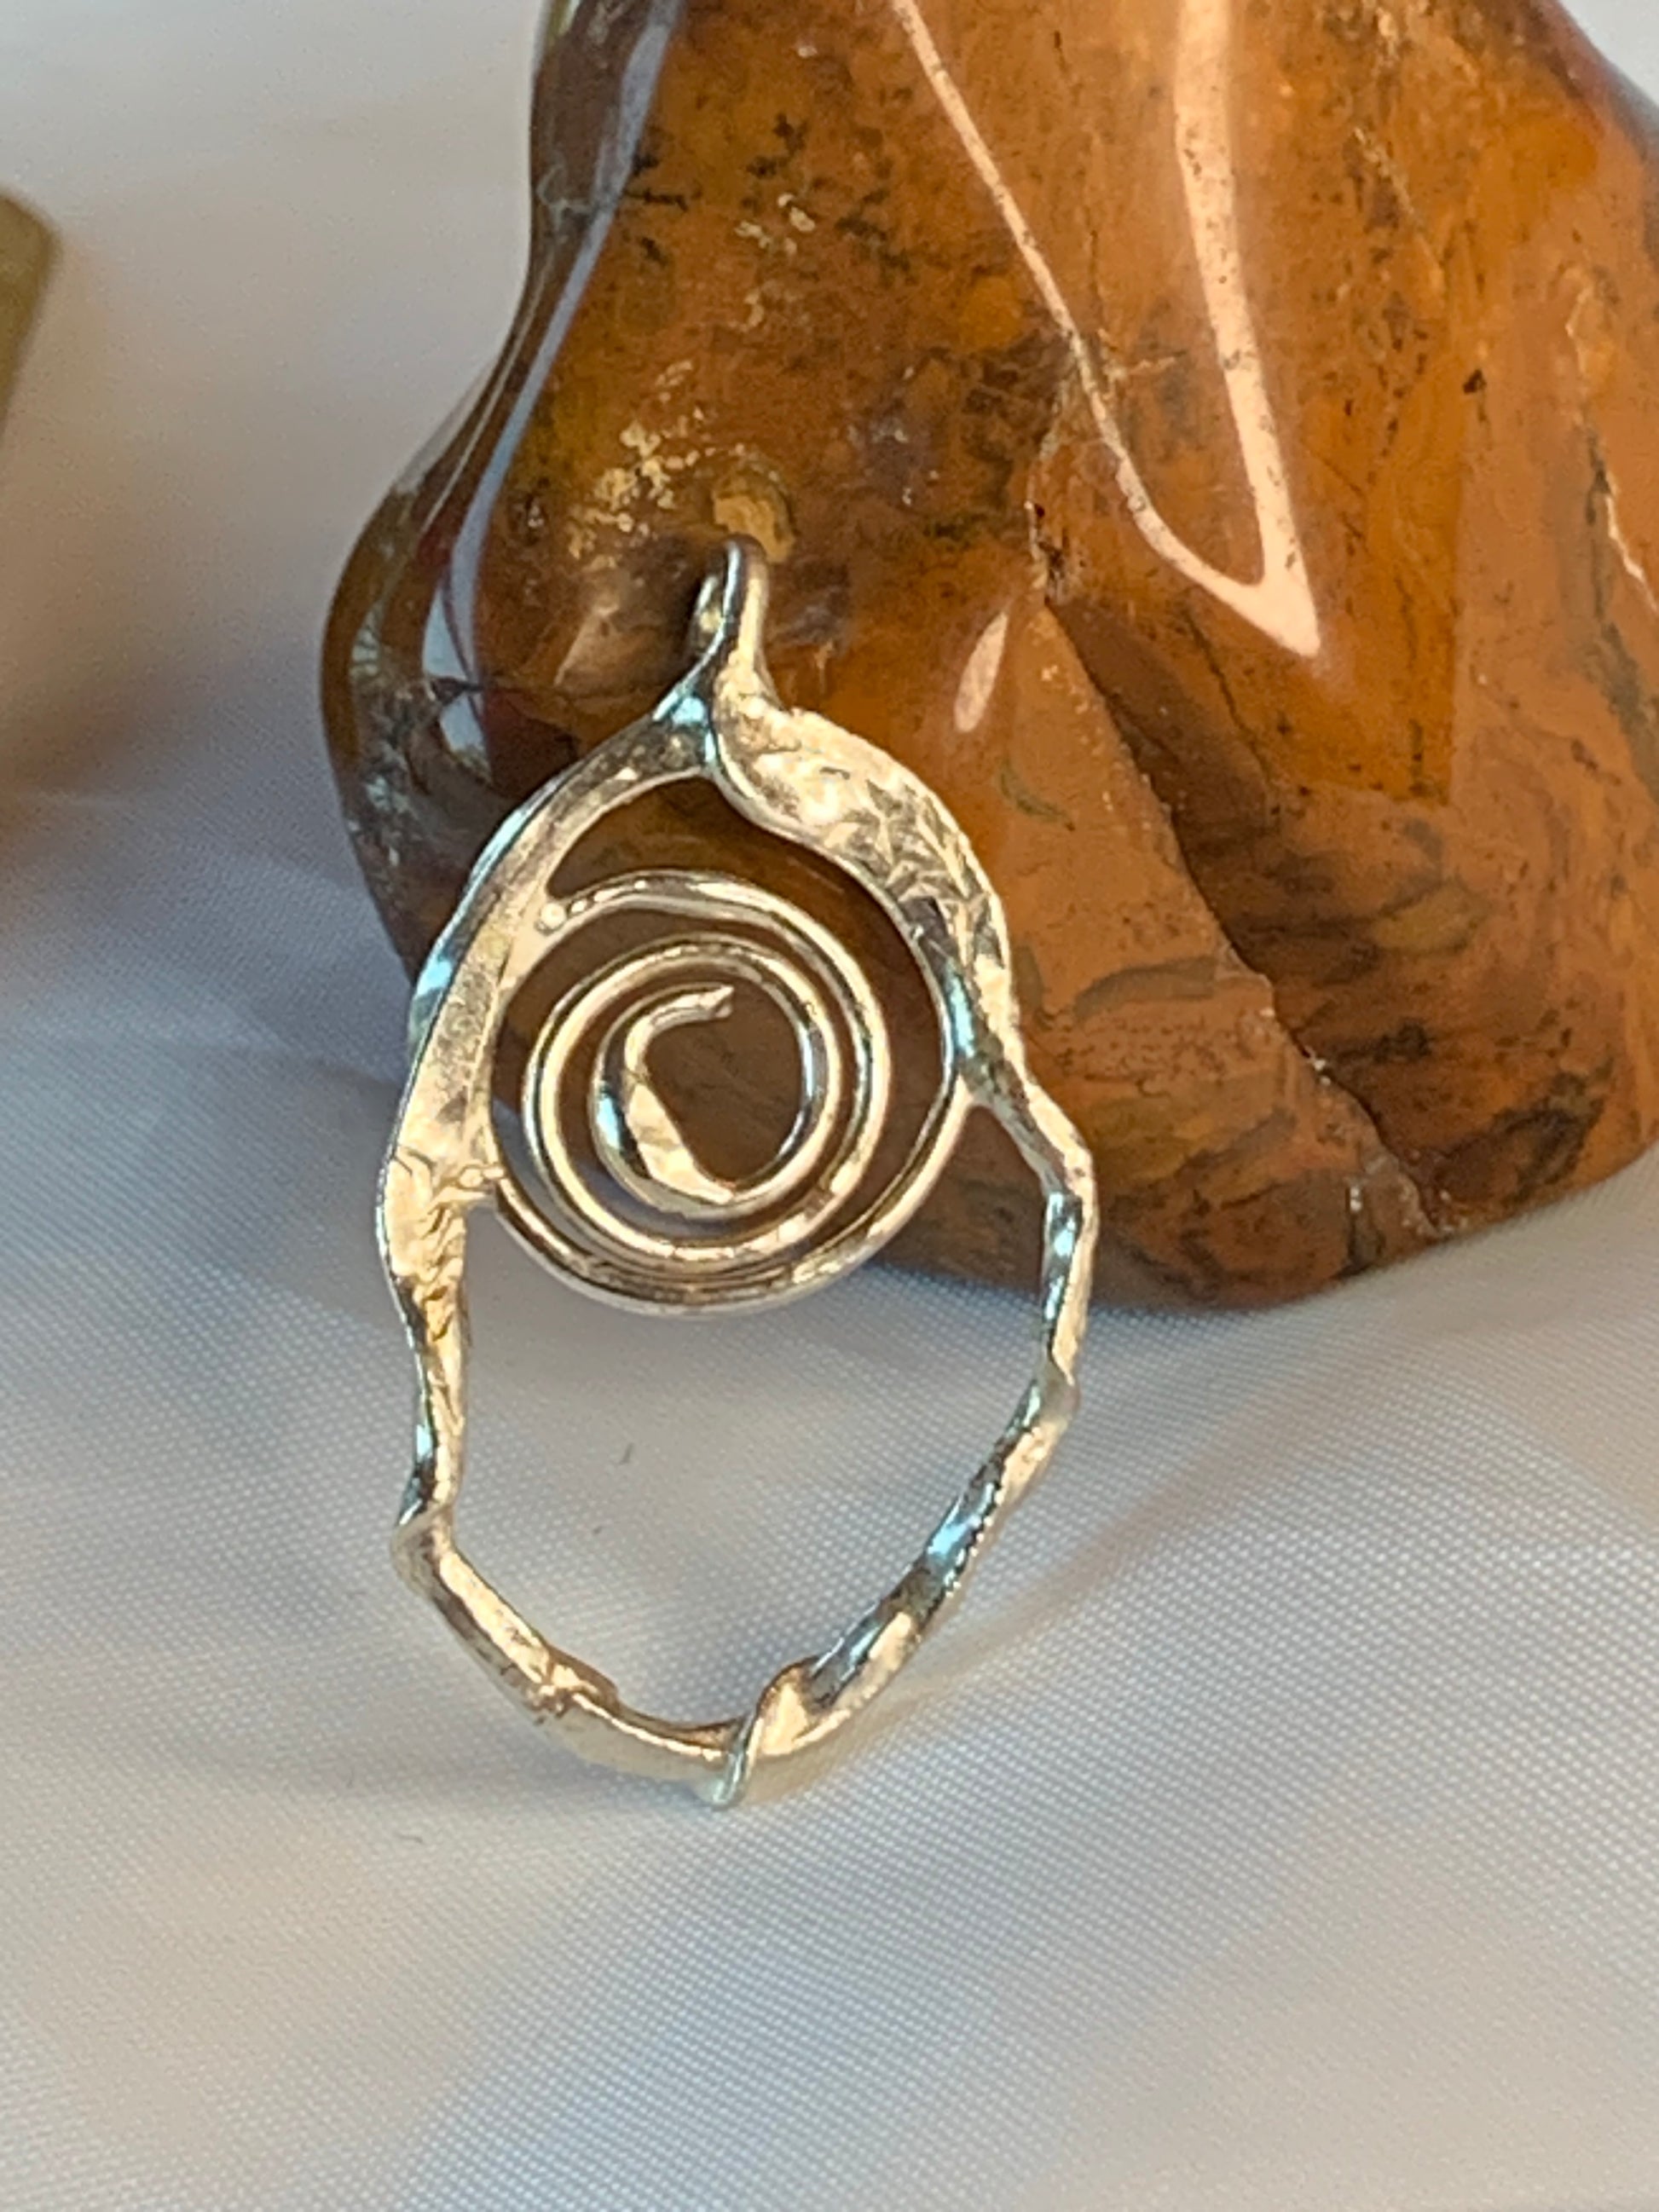 Fused Sterling Silver Spiral Pendant . Designer made by hand. 925 sterling silver. spiral geometric design